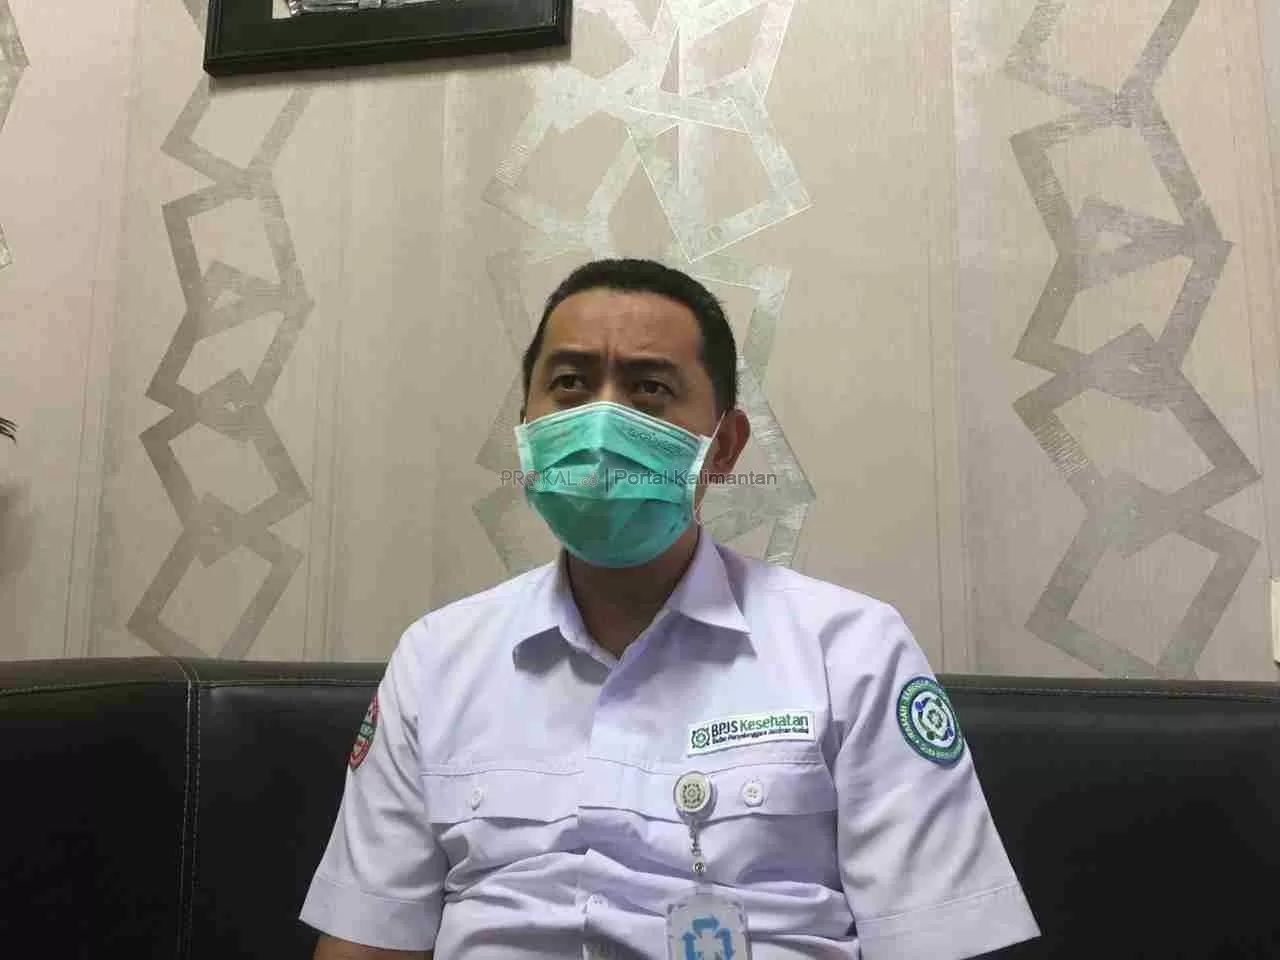 Kepala Kantor Cabang BPJS Kesehatan Kota Balikpapan Sugiyanto. (rin/pro)